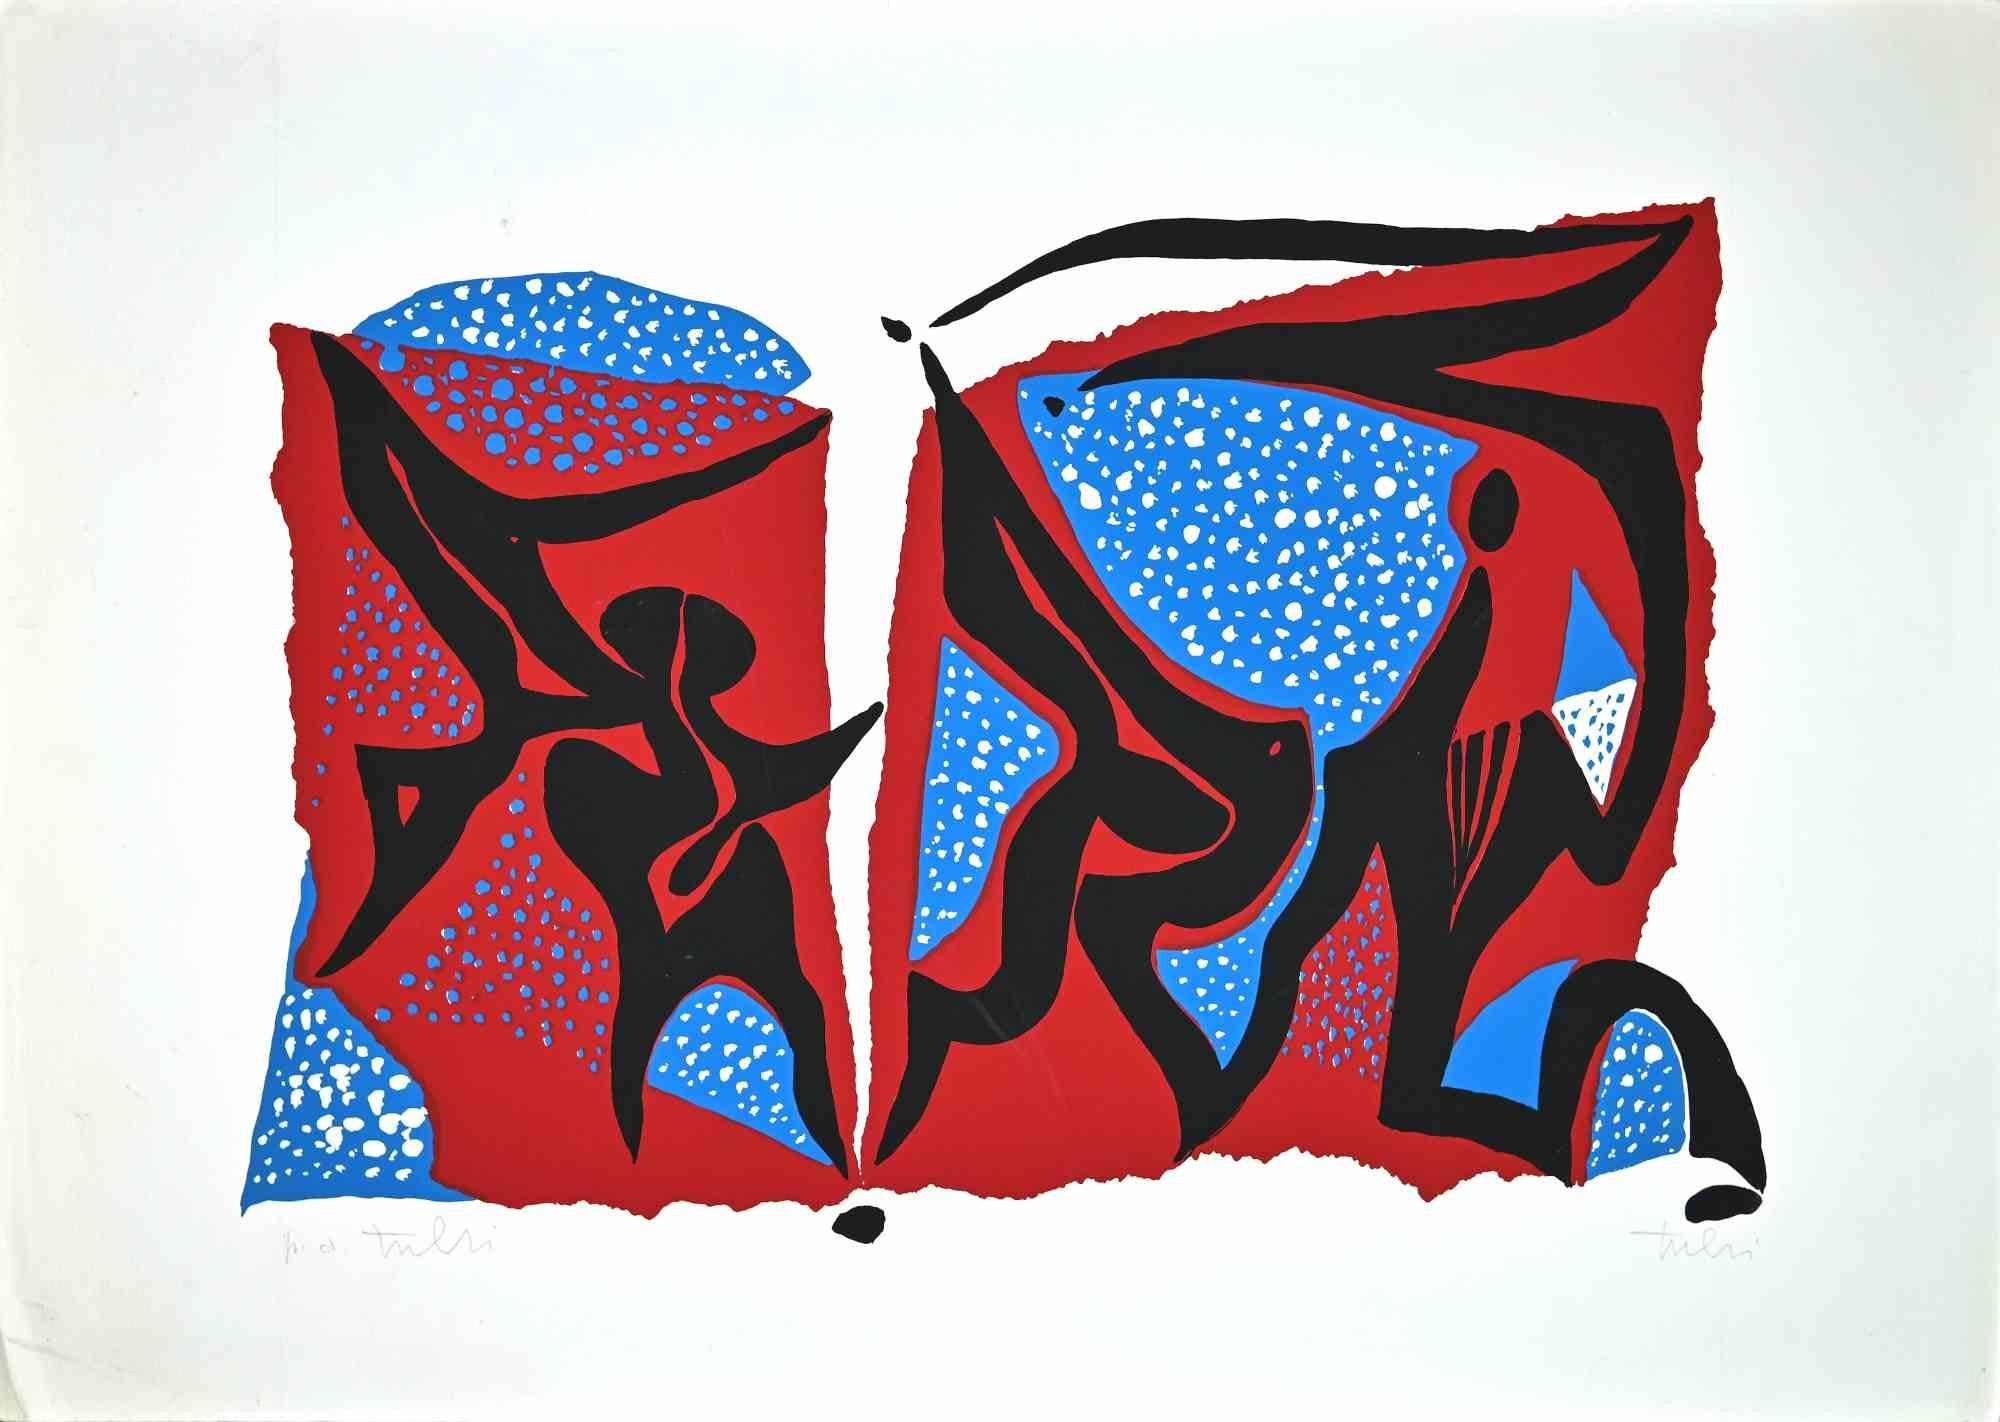 Composition abstraite est une sérigraphie colorée sur papier, réalisée dans les années 1970 par l'artiste italien.  Wladimiro Tulli.

Signé à la main en bas à droite. Preuve d'artiste.

Une belle œuvre d'art représentant une composition abstraite à